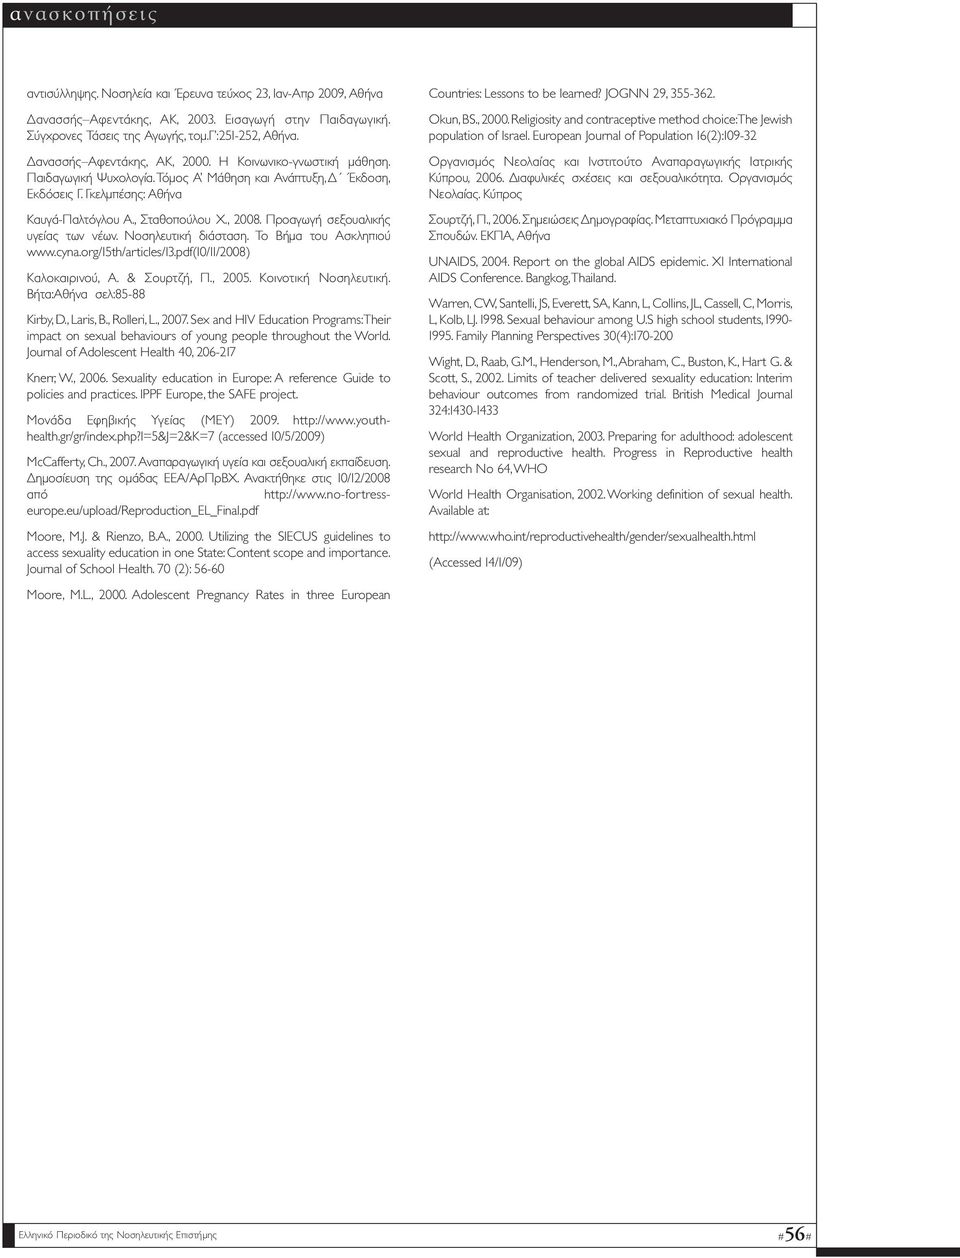 Προαγωγή σεξουαλικής υγείας των νέων. Nοσηλευτική διάσταση. Το Βήµα του Ασκληπιού www.cyna.org/15th/articles/13.pdf(10/11/2008) Καλοκαιρινού, Α. & Σουρτζή, Π., 2005. Κοινοτική Νοσηλευτική.